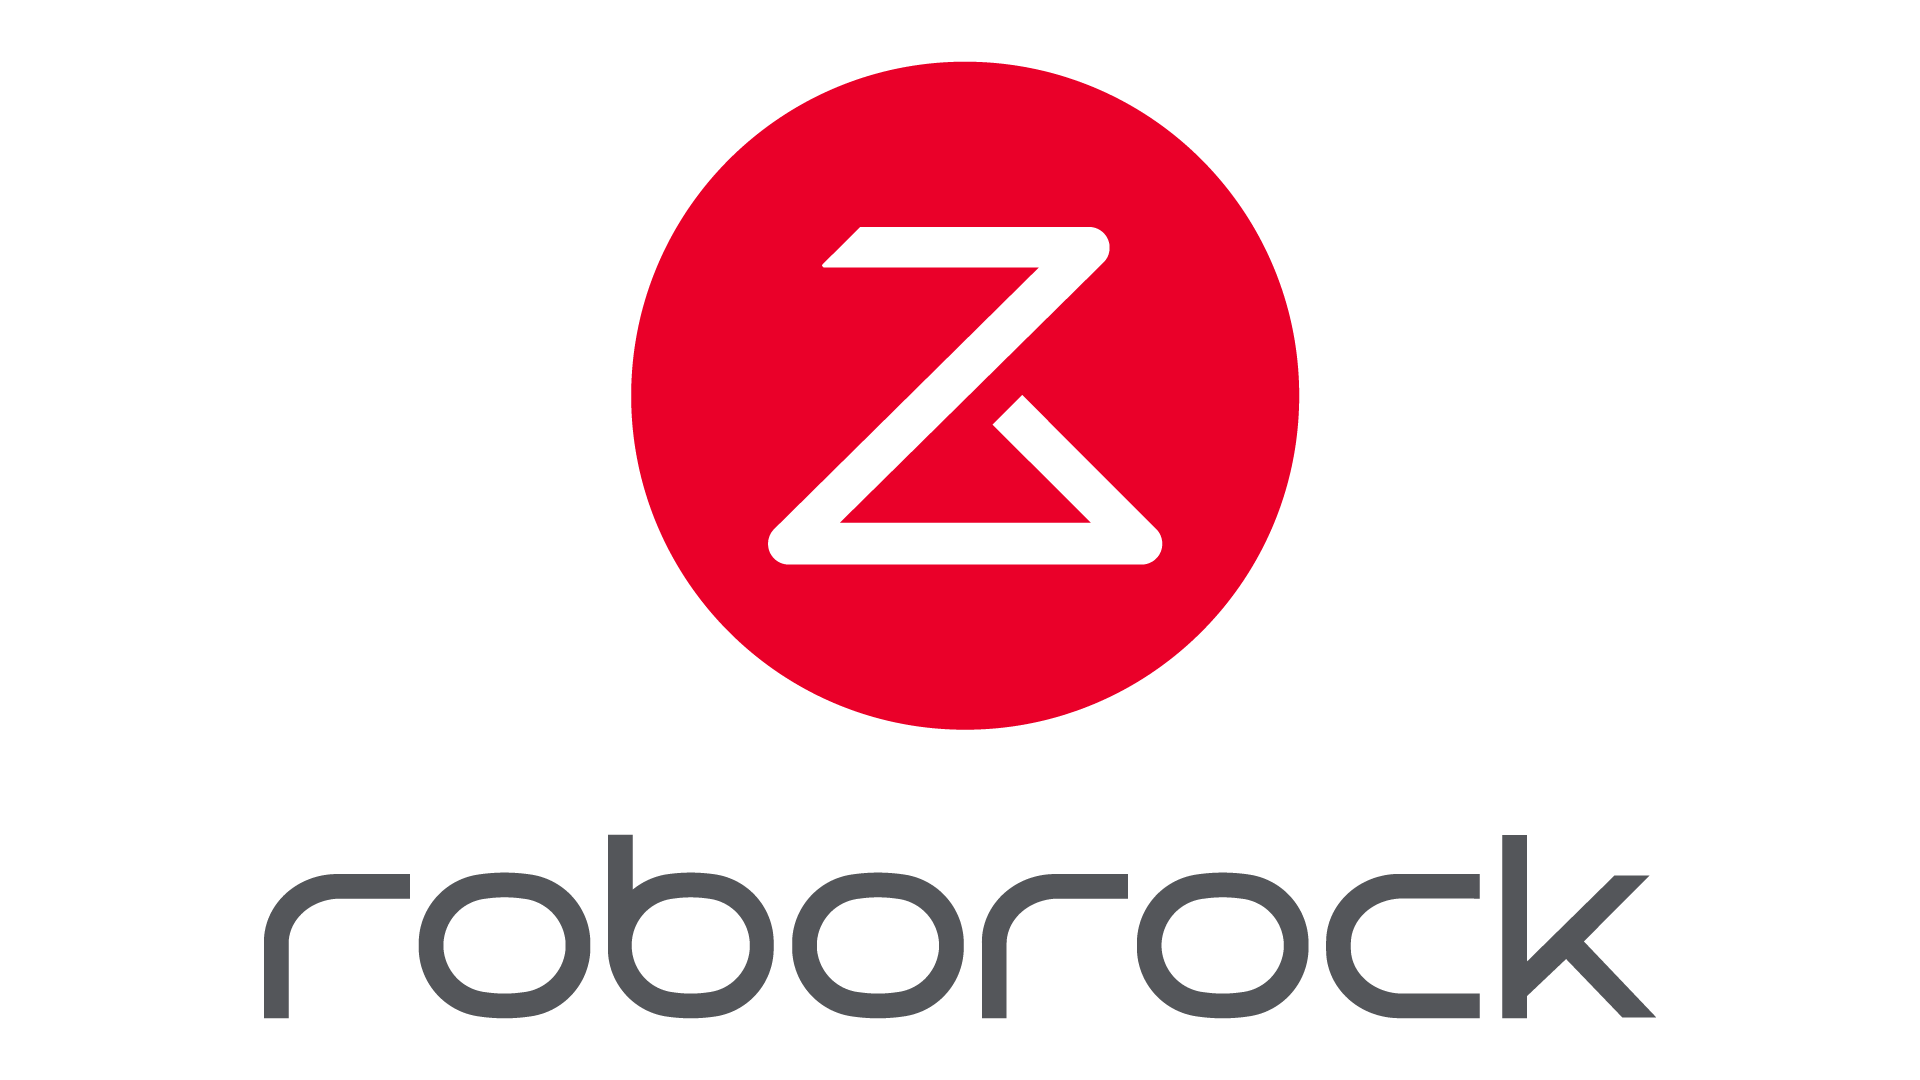 Roborock là hãng nghiên cứu và sản xuất robot hút bụi lau nhà thuộc hệ sinh thái Xiaomi